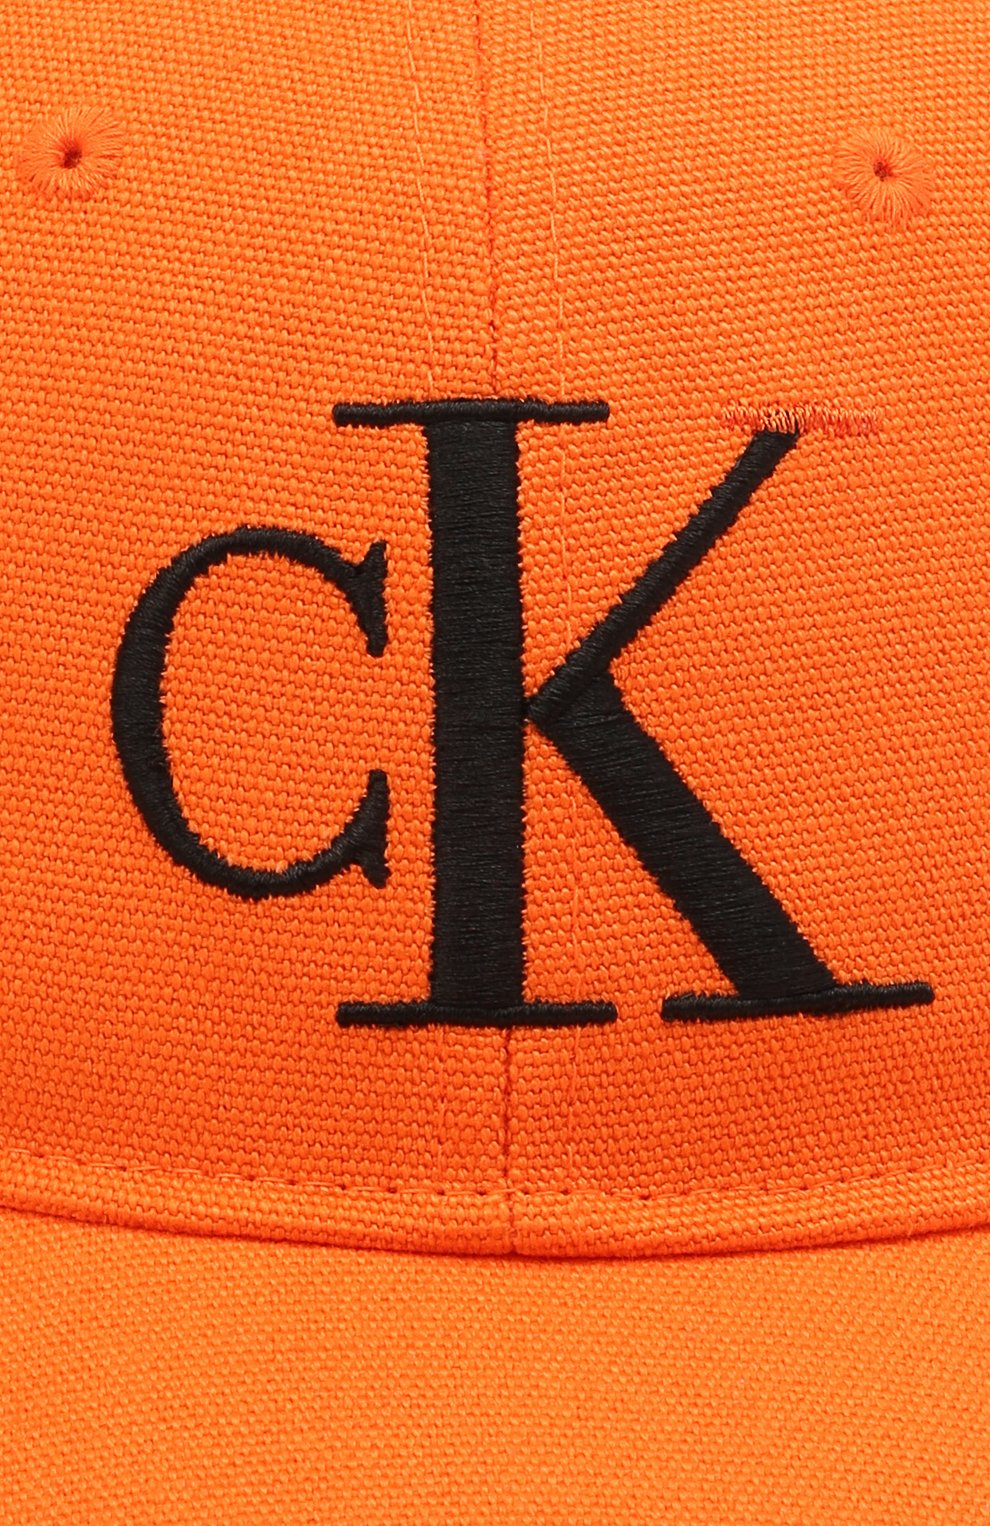 Женская хлопковая бейсболка HERON PRESTON FOR CALVIN KLEIN оранжевого цвета, арт. K50K508122 | Фото 3 (Материал: Текстиль, Хлопок)